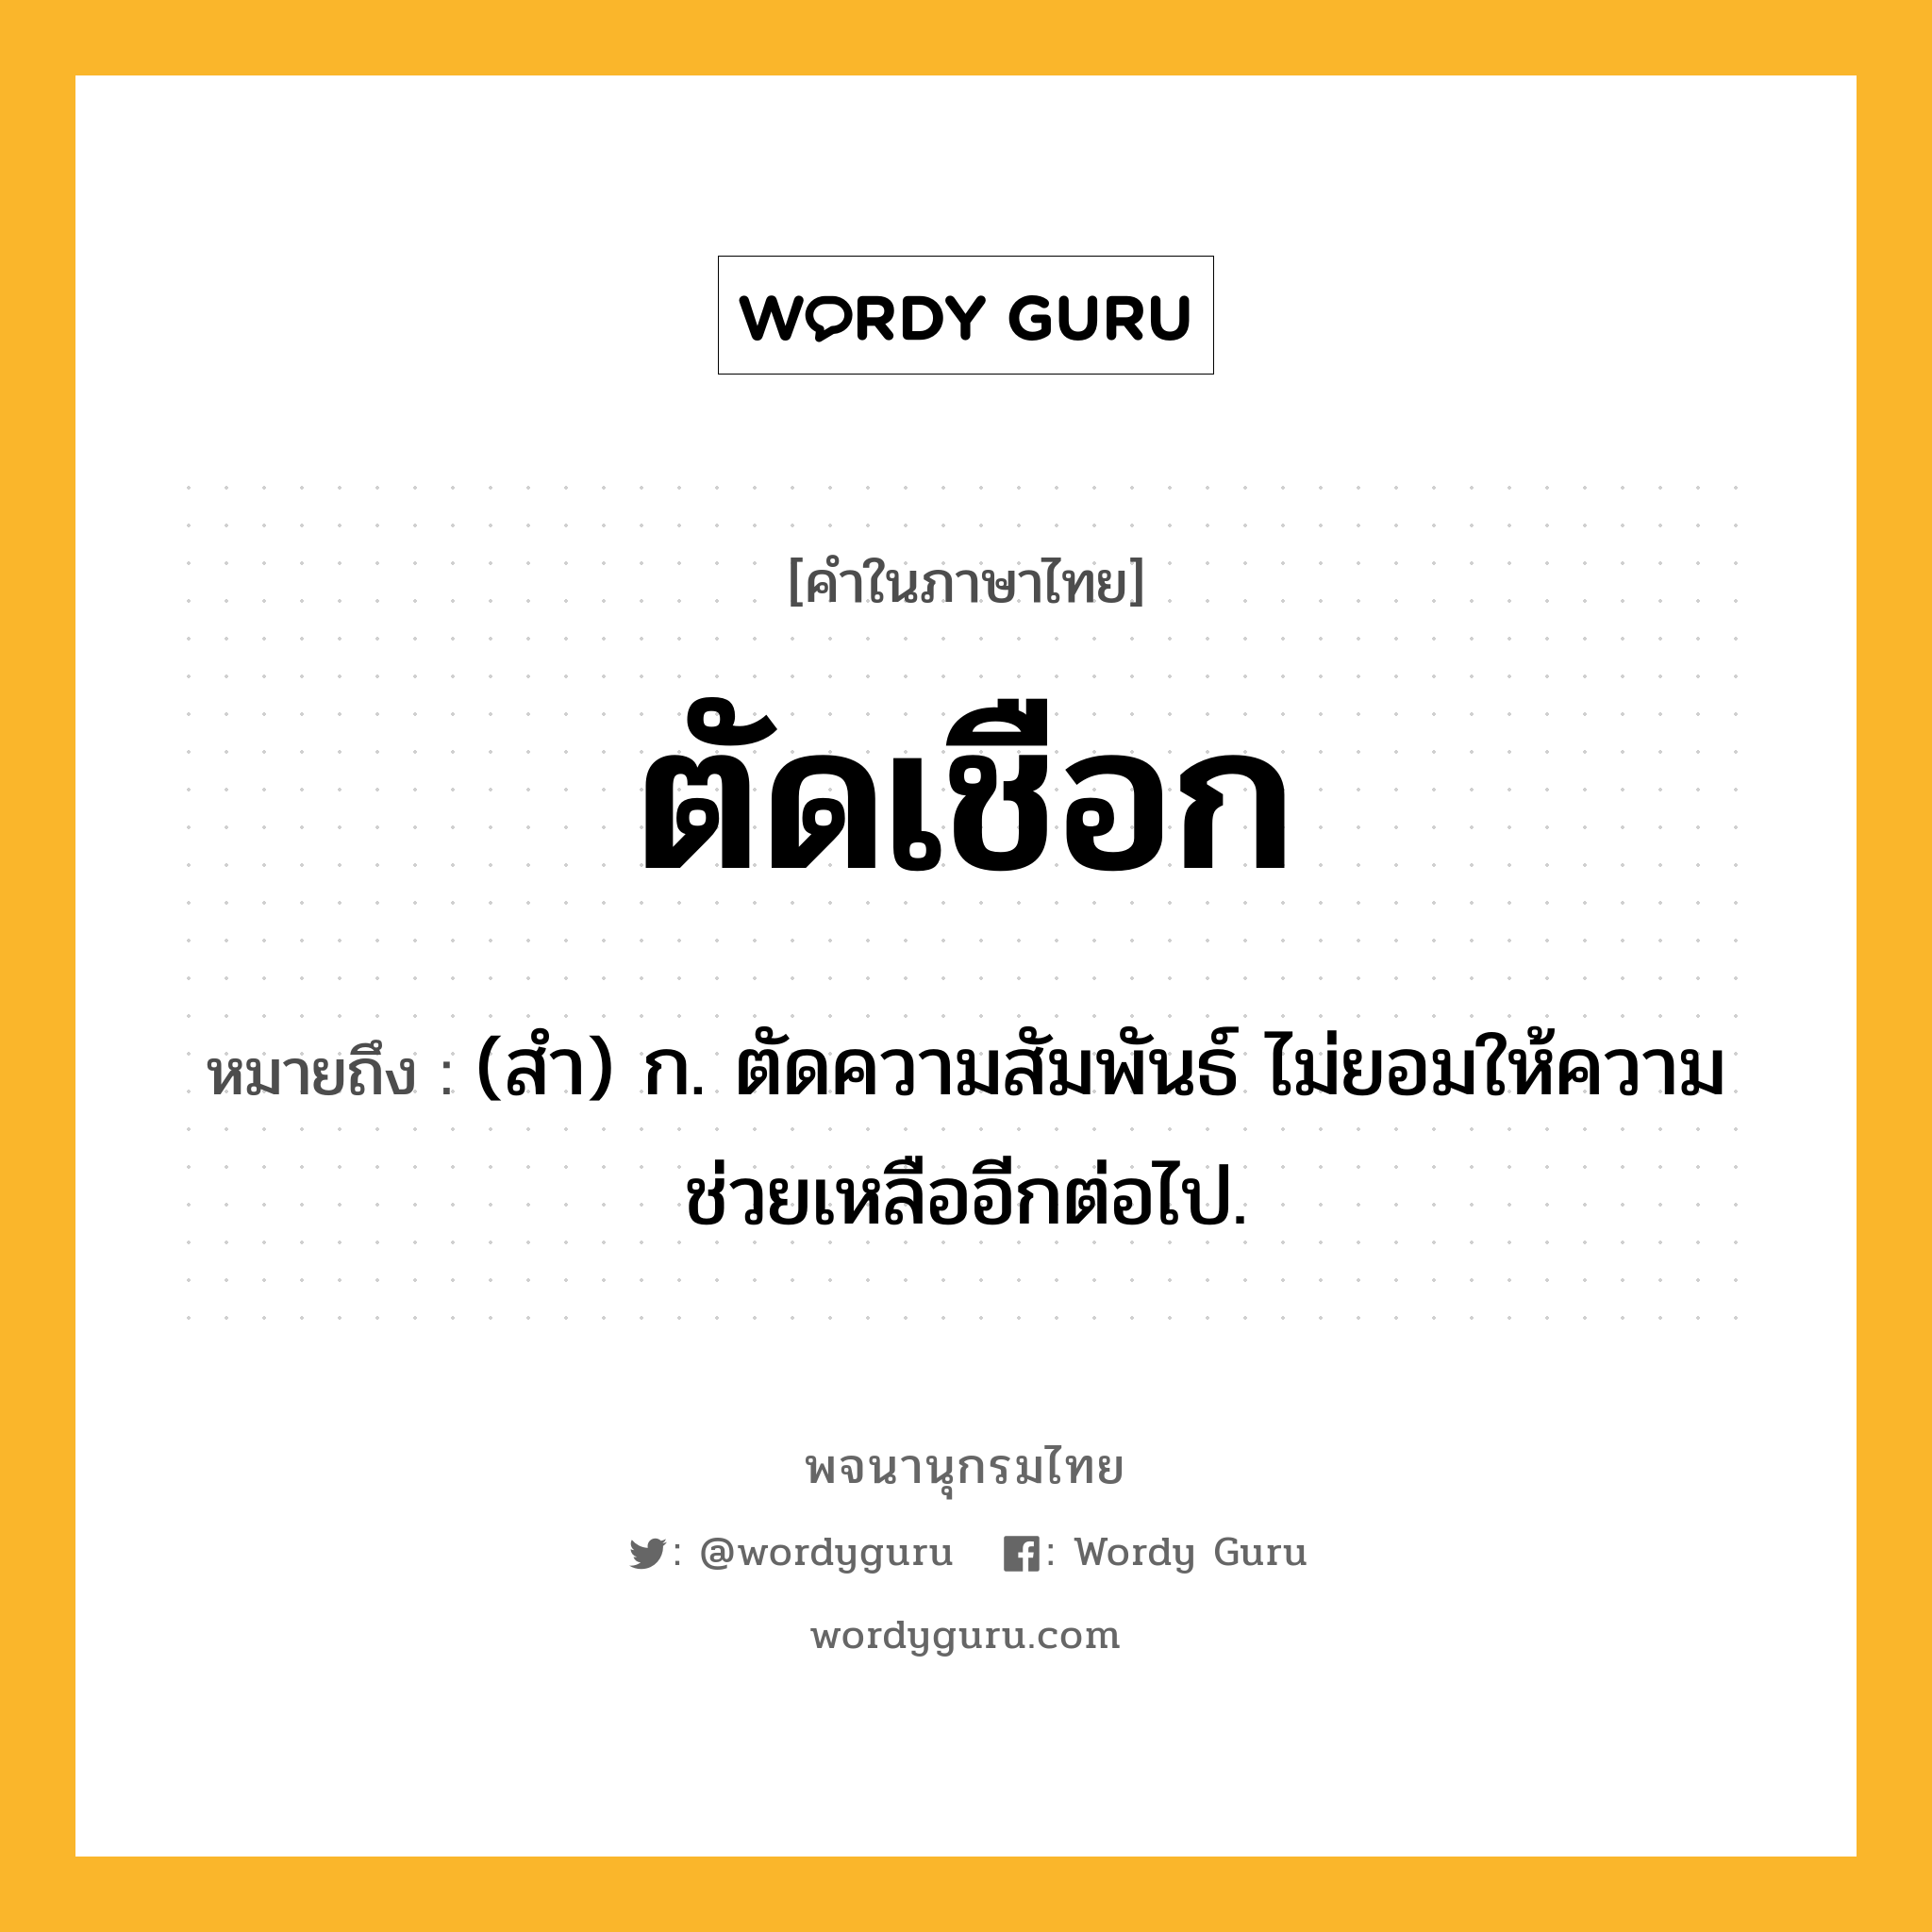 ตัดเชือก ความหมาย หมายถึงอะไร?, คำในภาษาไทย ตัดเชือก หมายถึง (สํา) ก. ตัดความสัมพันธ์ ไม่ยอมให้ความช่วยเหลืออีกต่อไป.